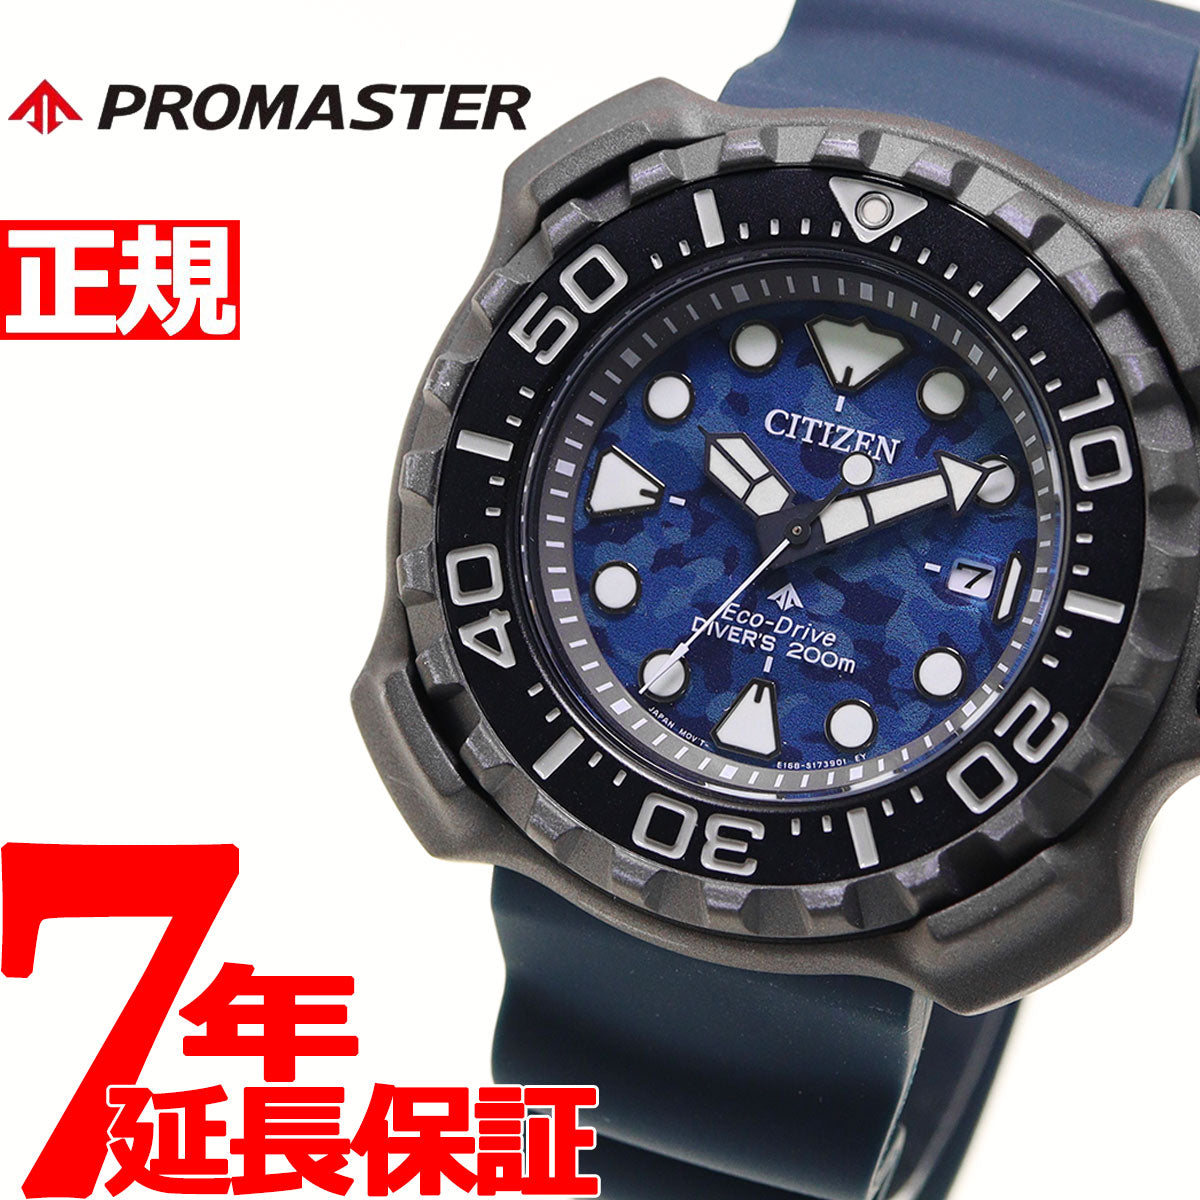 シチズン CITIZEN 腕時計 メンズ BN0227-09L プロマスター エコ・ドライブ マリーンシリーズ ダイバー200m PROMASTER Eco-Drive MARINE エコ・ドライブ（E168/日本製） ブルー/カモフラージュ柄xブルー アナログ表示